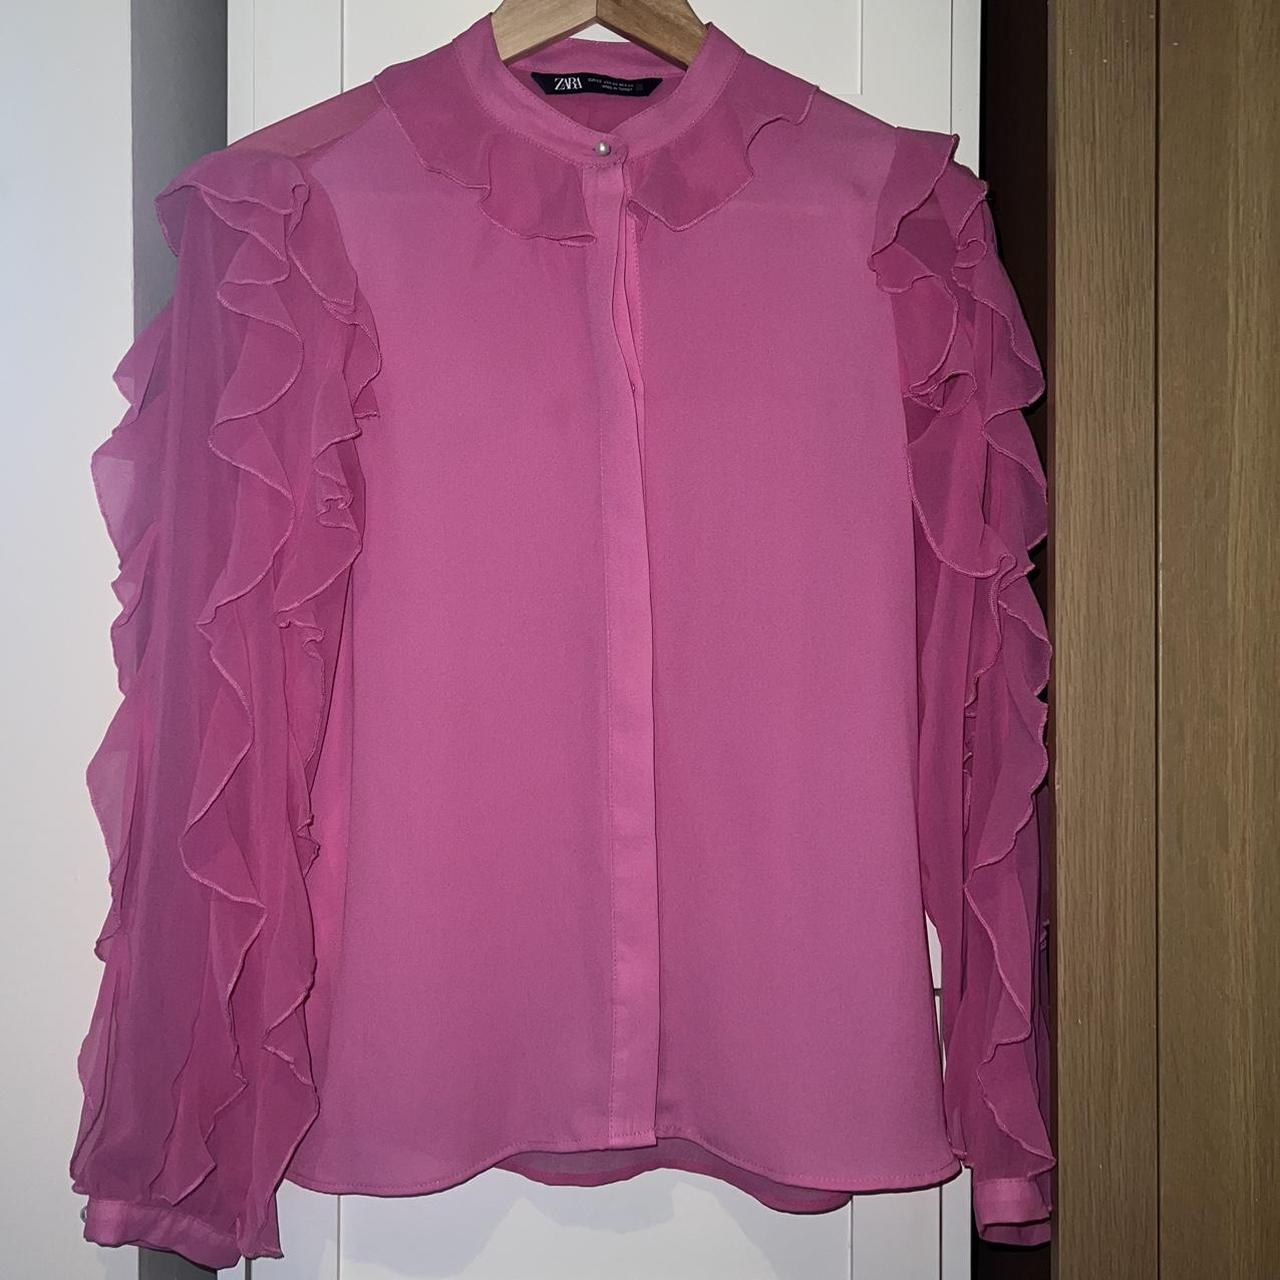 Zara hot pink blouse in XS! Free shipping to UK.... - Depop